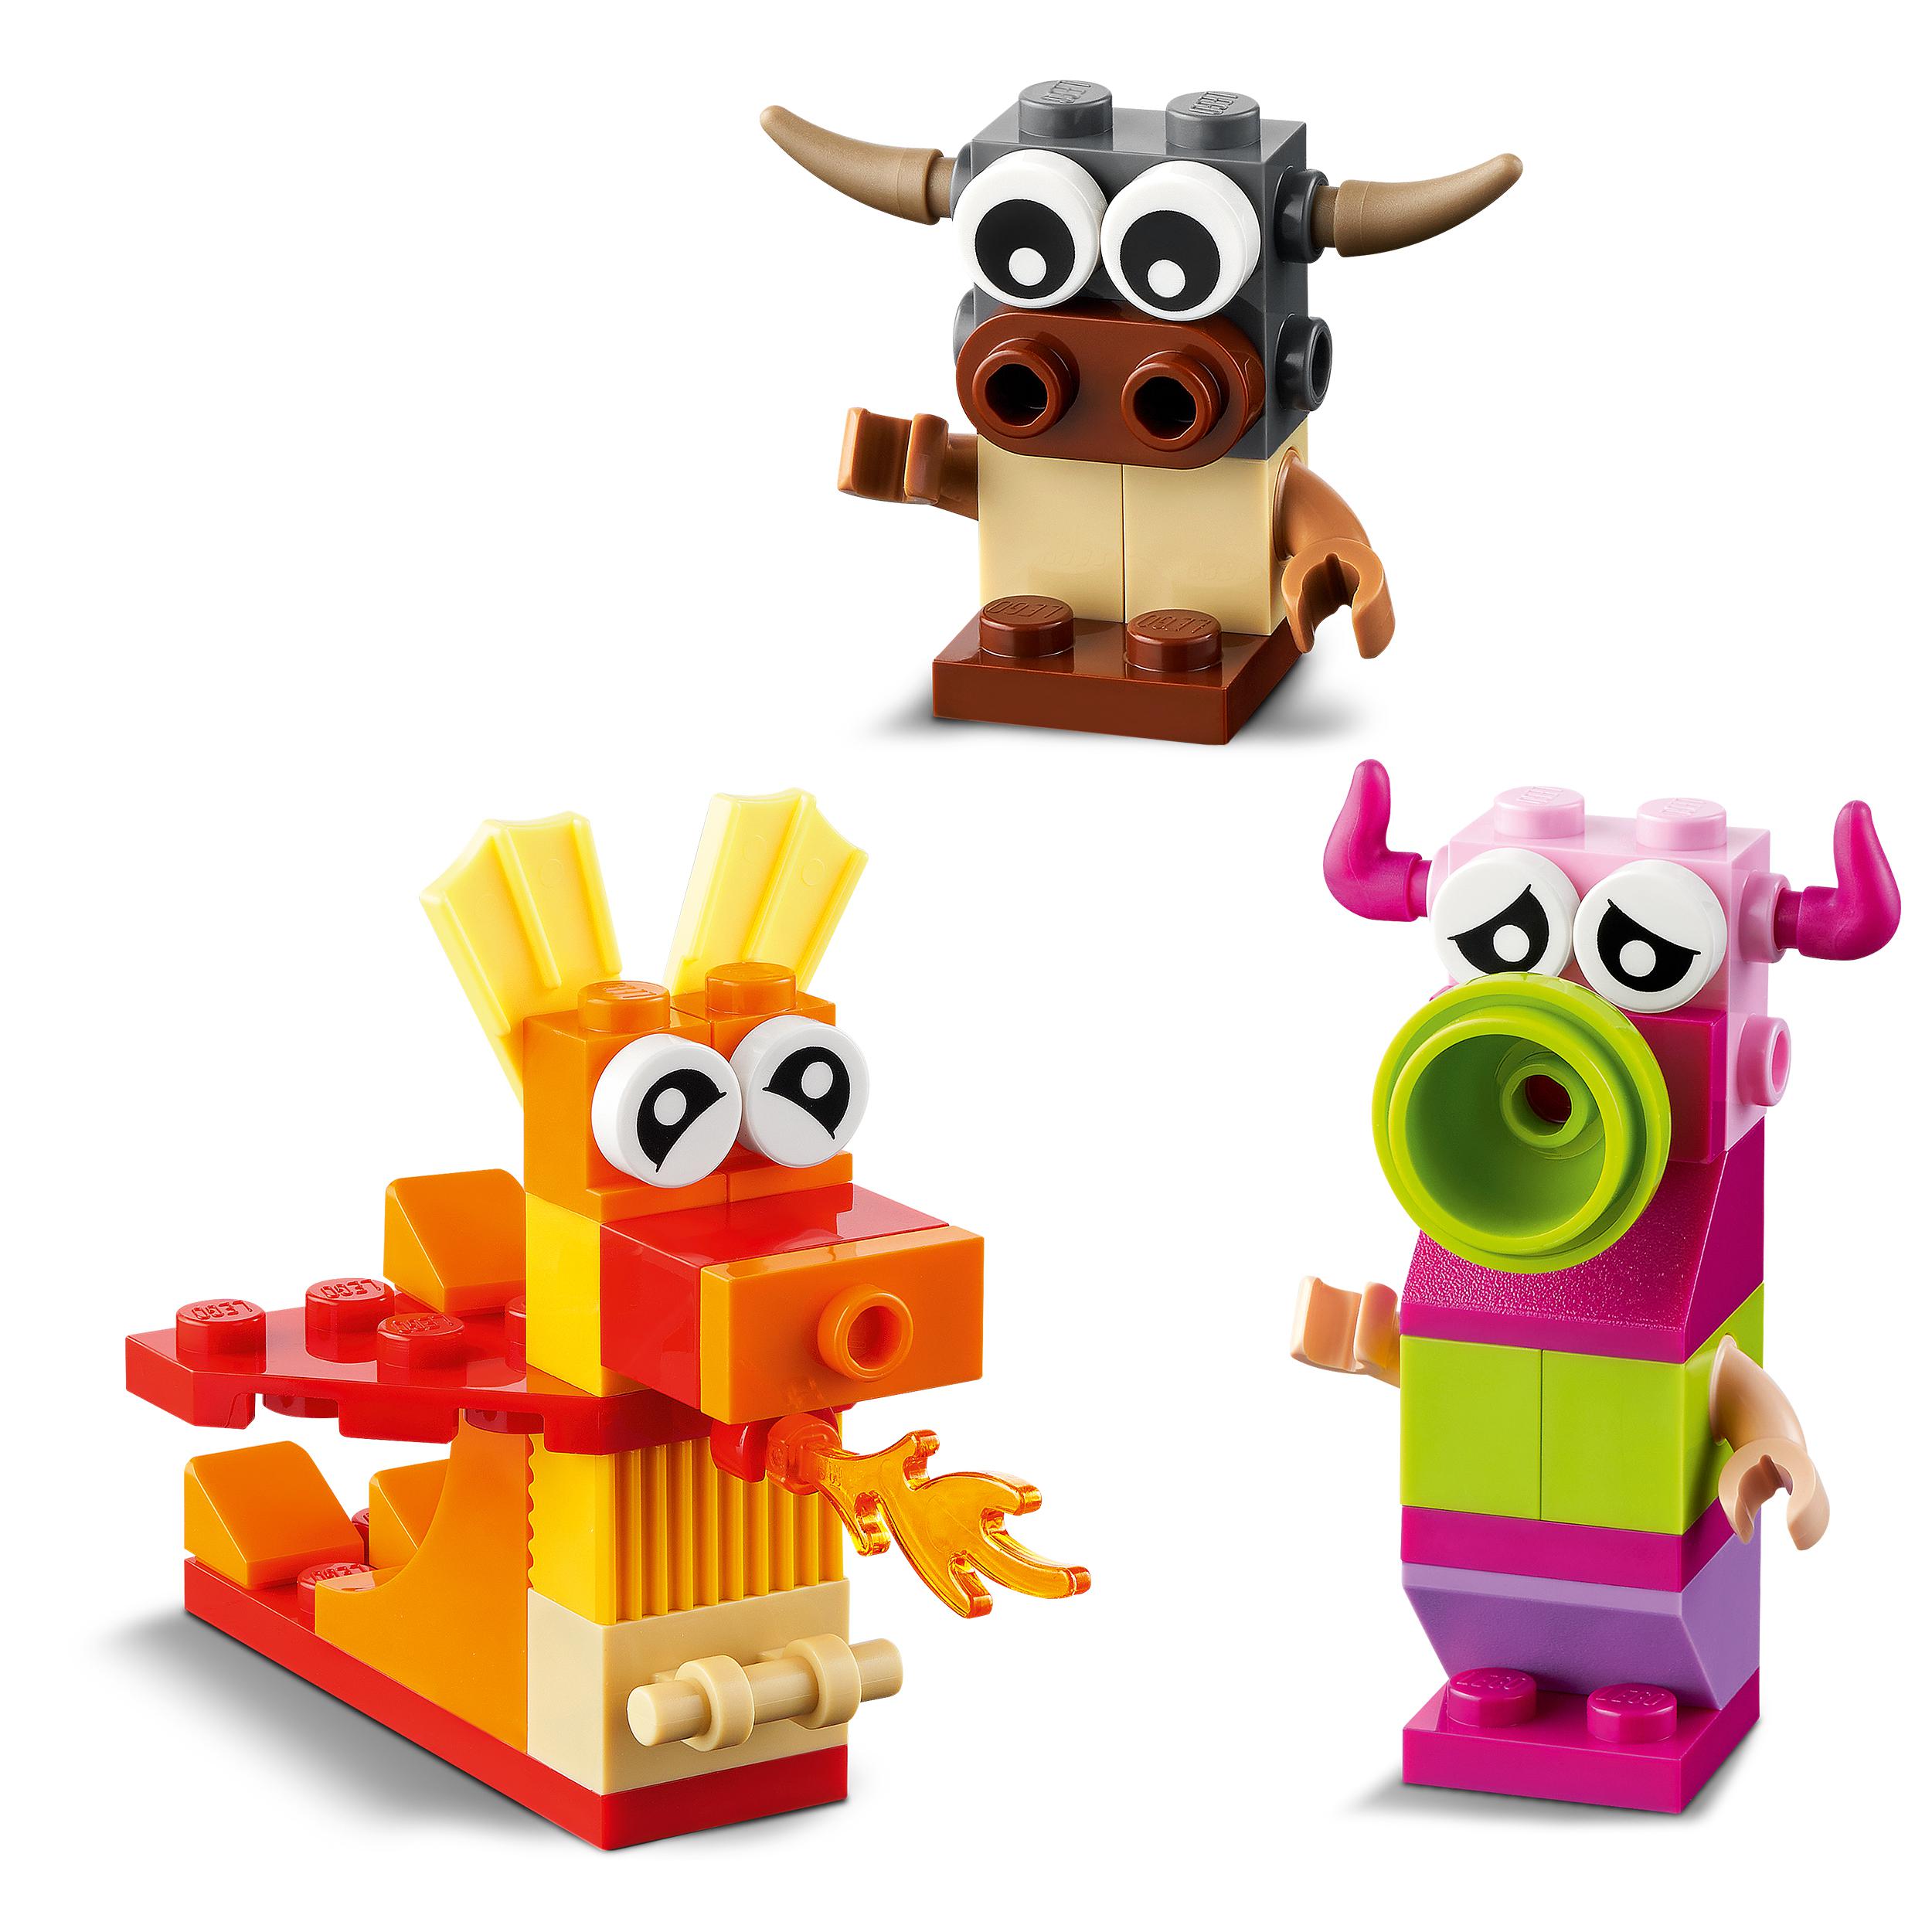 Lego classic 11017 mostri creativi, giochi educativi per bambini di 4+ anni, giocattolo con mattoncini da costruzione - LEGO CLASSIC, Lego